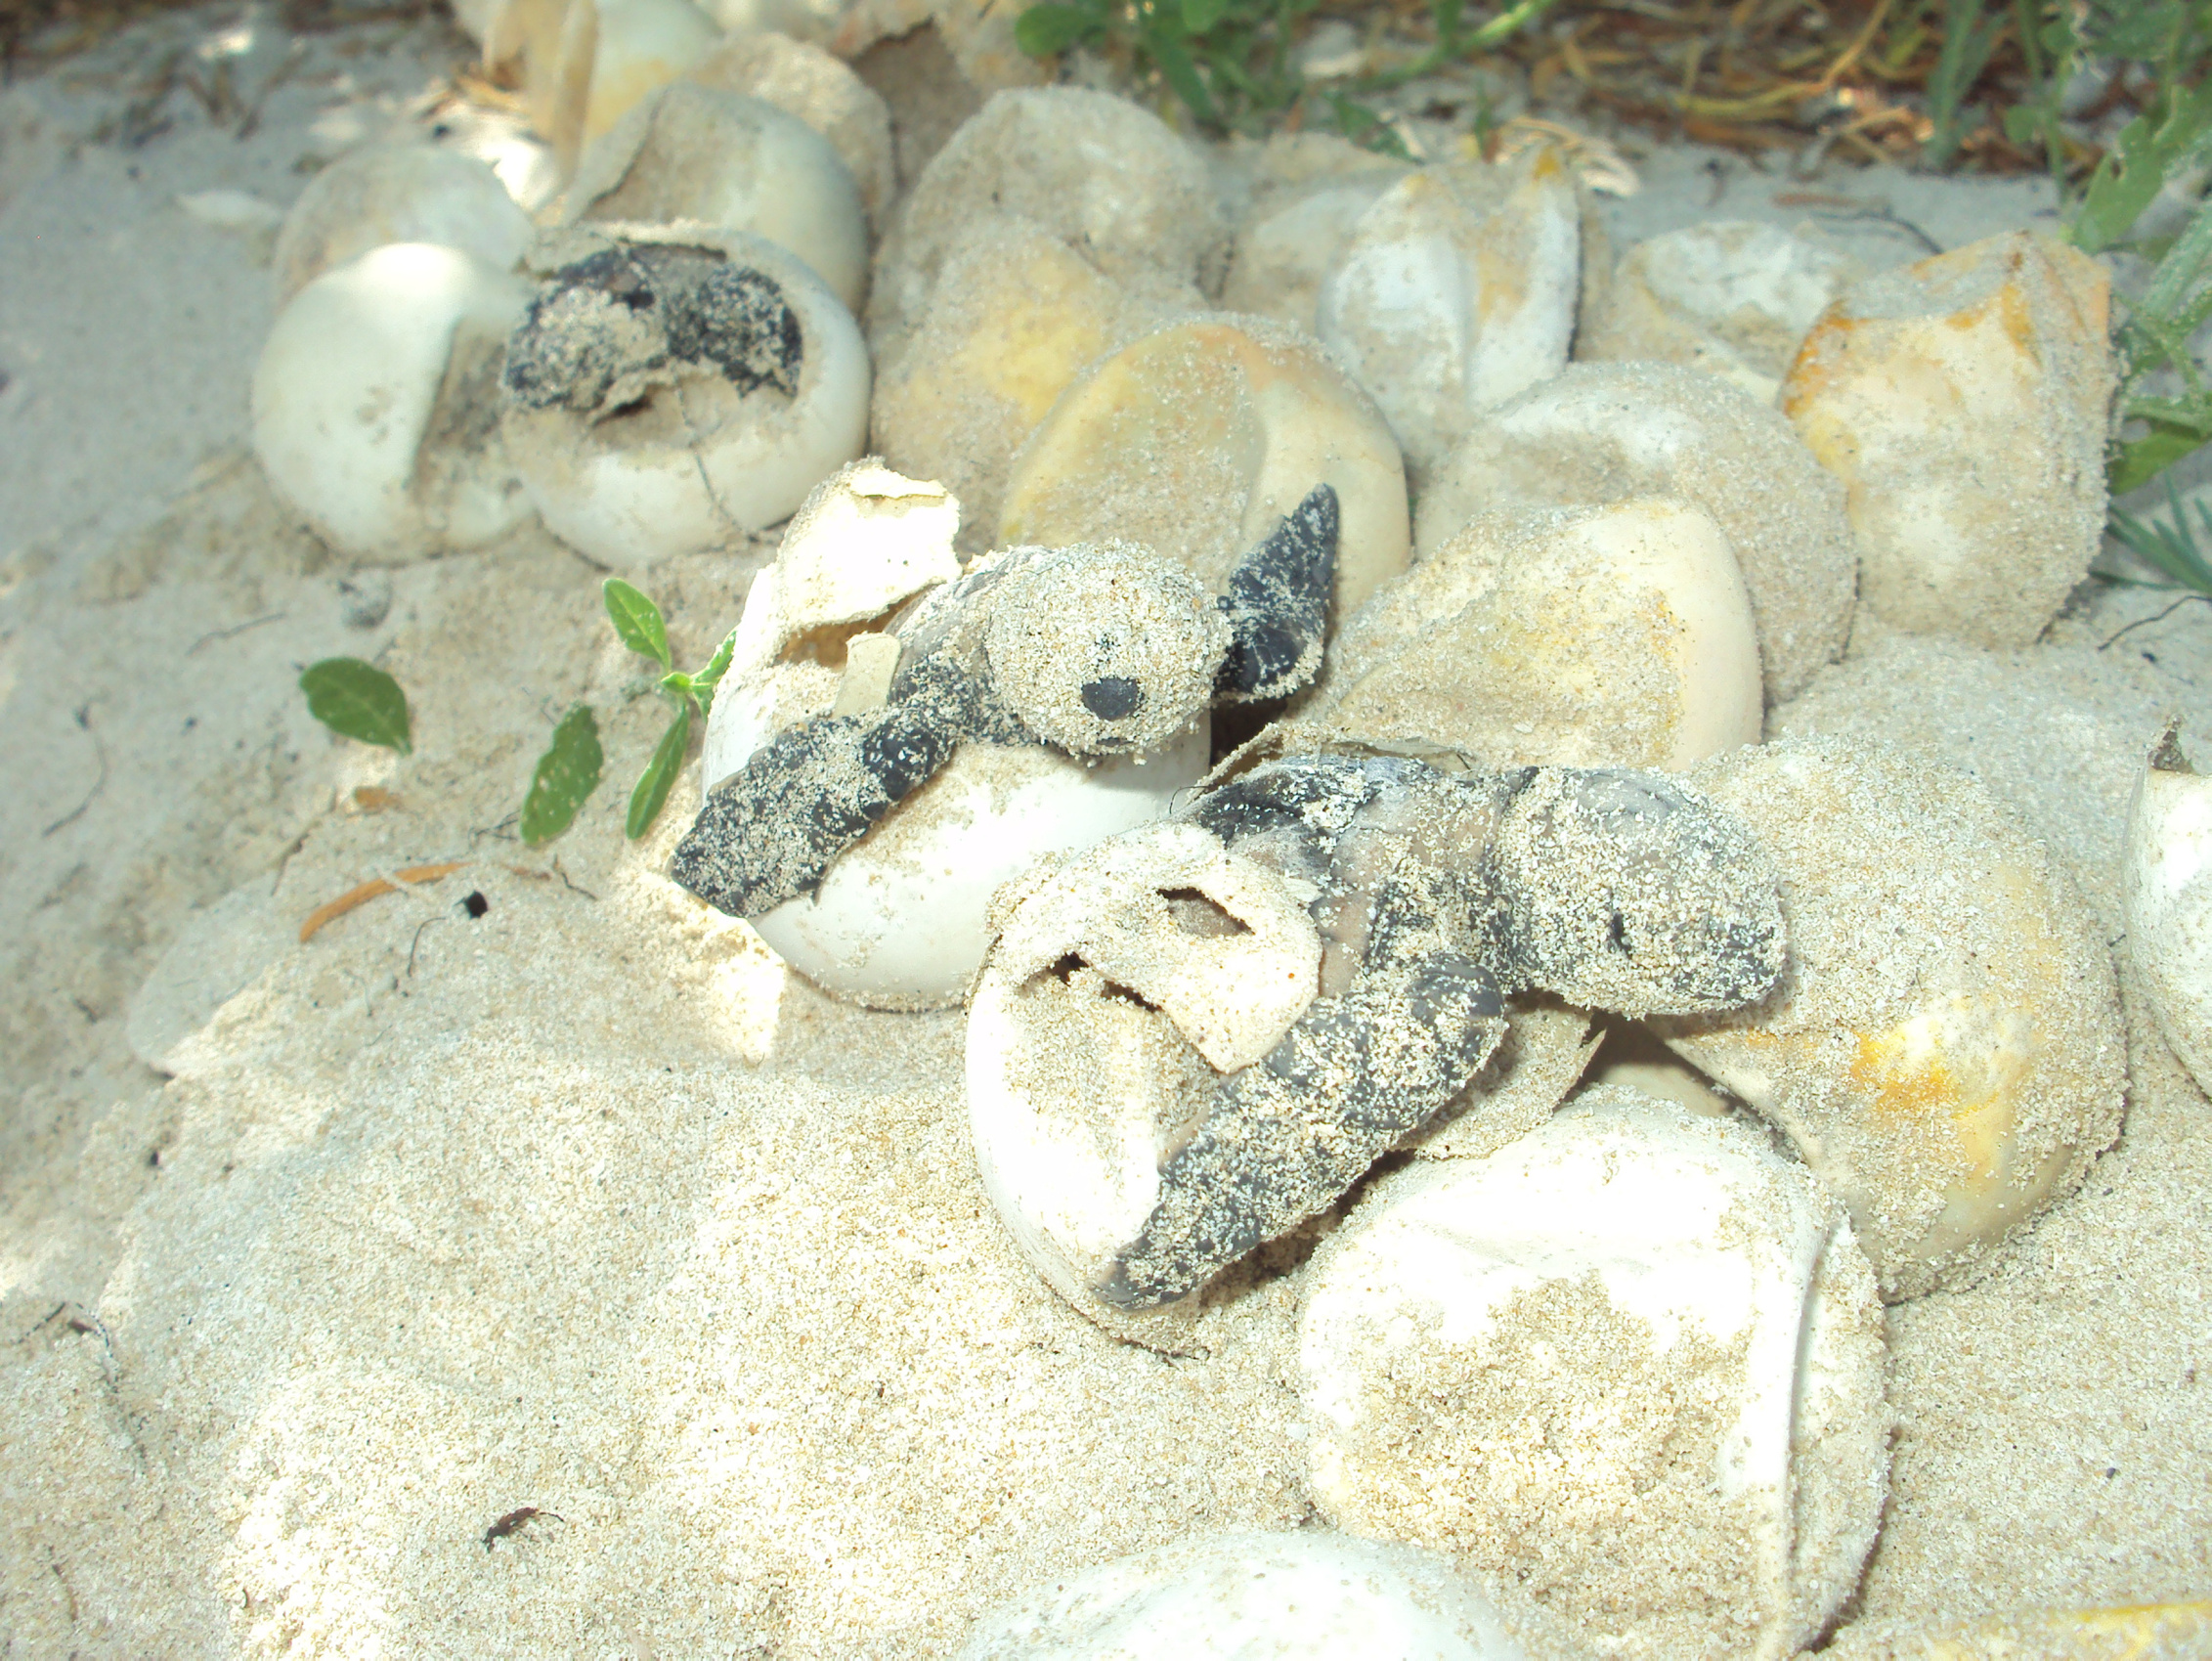 Especie lora, la más amenazada por robo de huevo de tortuga